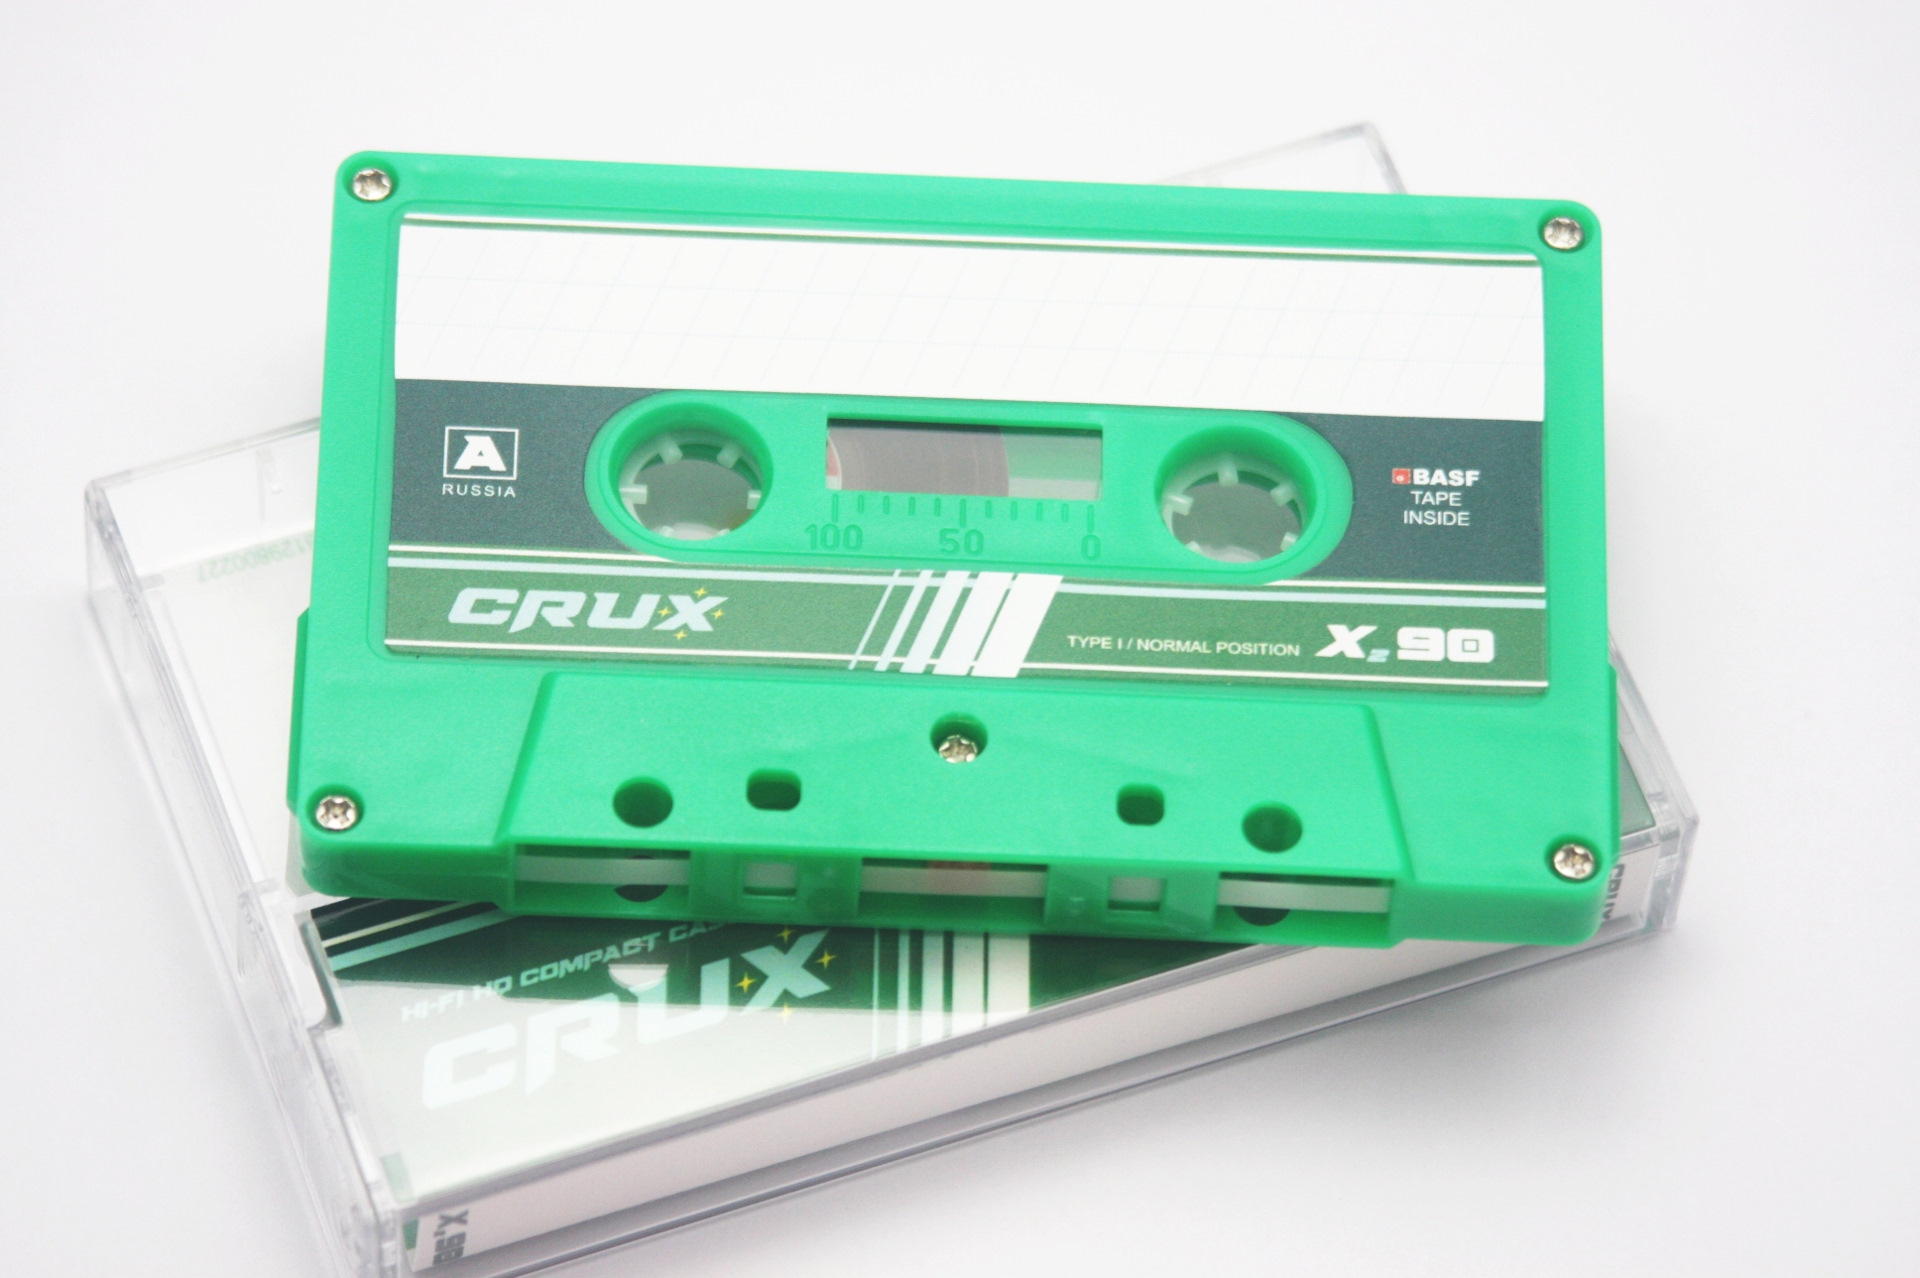 Батину кассету. Компакт кассеты Crux. Кассеты ЕСР UF 90. Аудиокассета MK-90-25 Crux. Industar компакт кассеты.